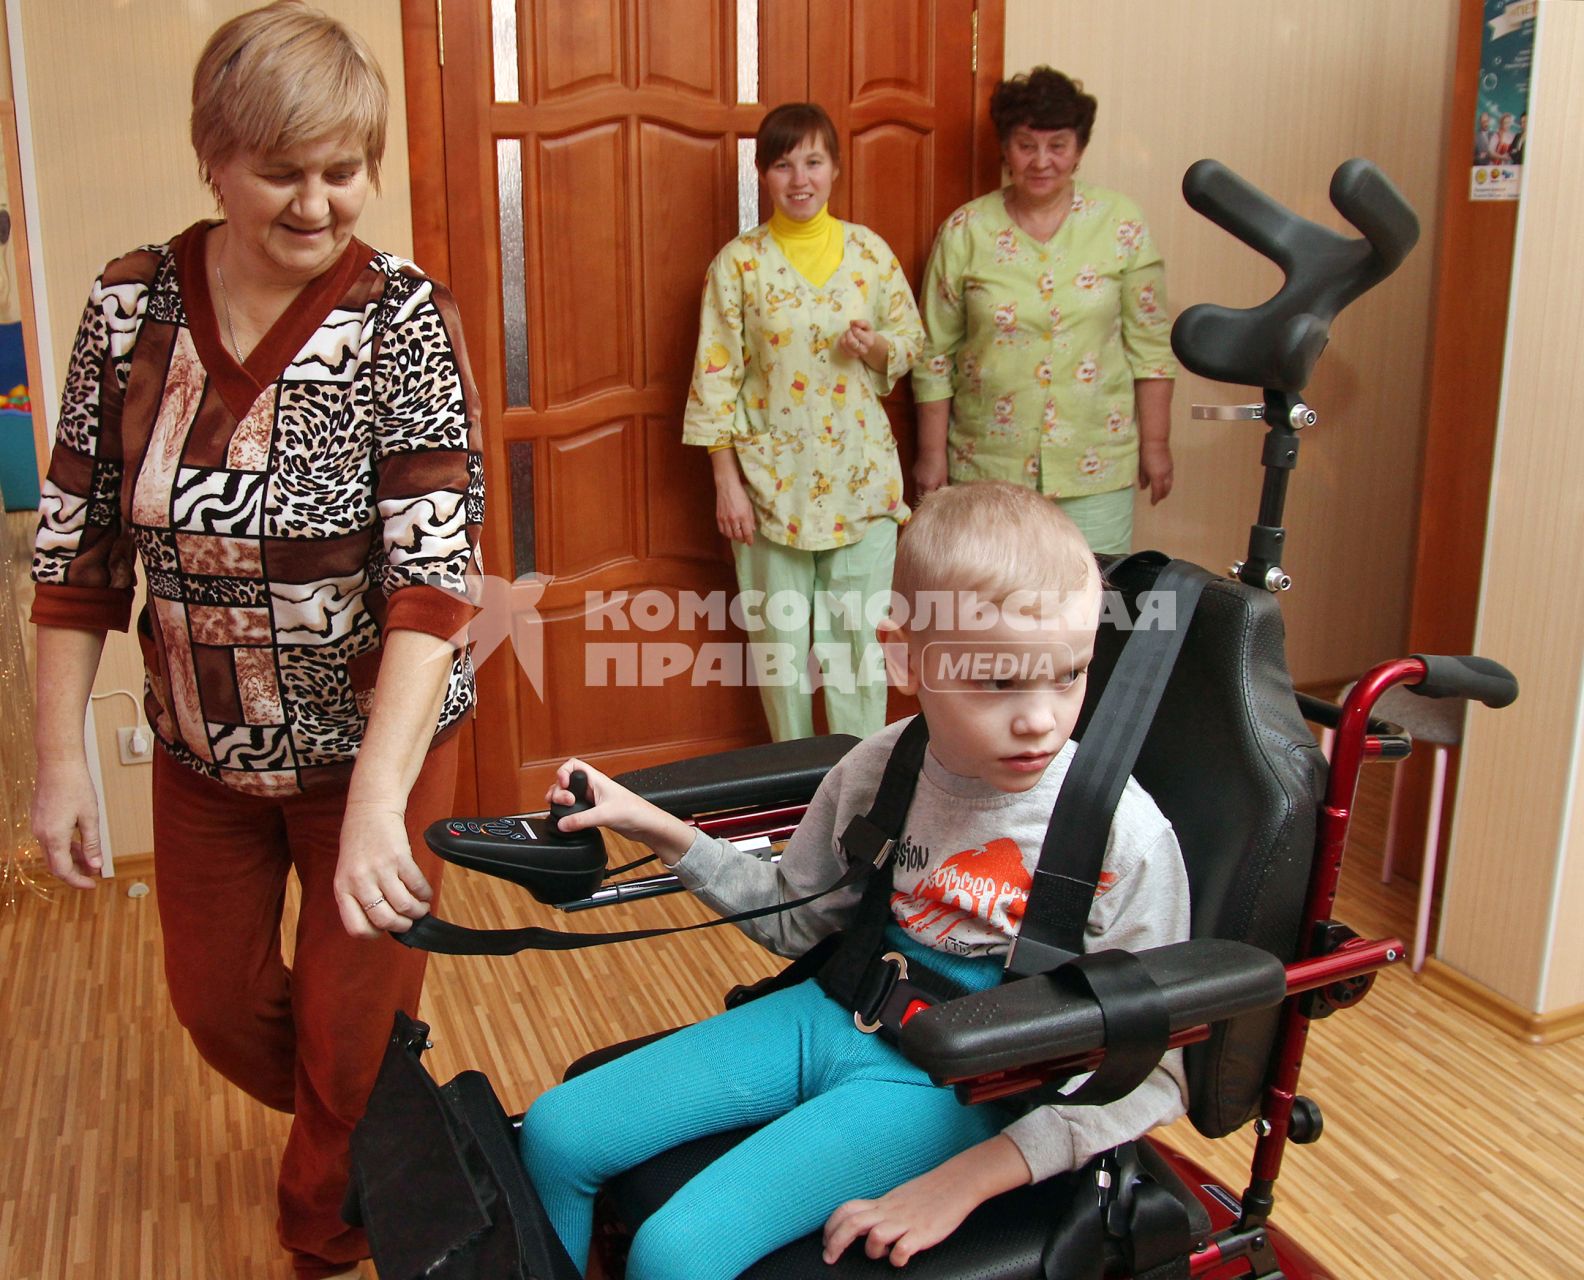 Детский хоспис в Республике Татарстан. На снимке: ребенок инвалид на инвалидной коляске с электрическим приводом и персонал хосписа.